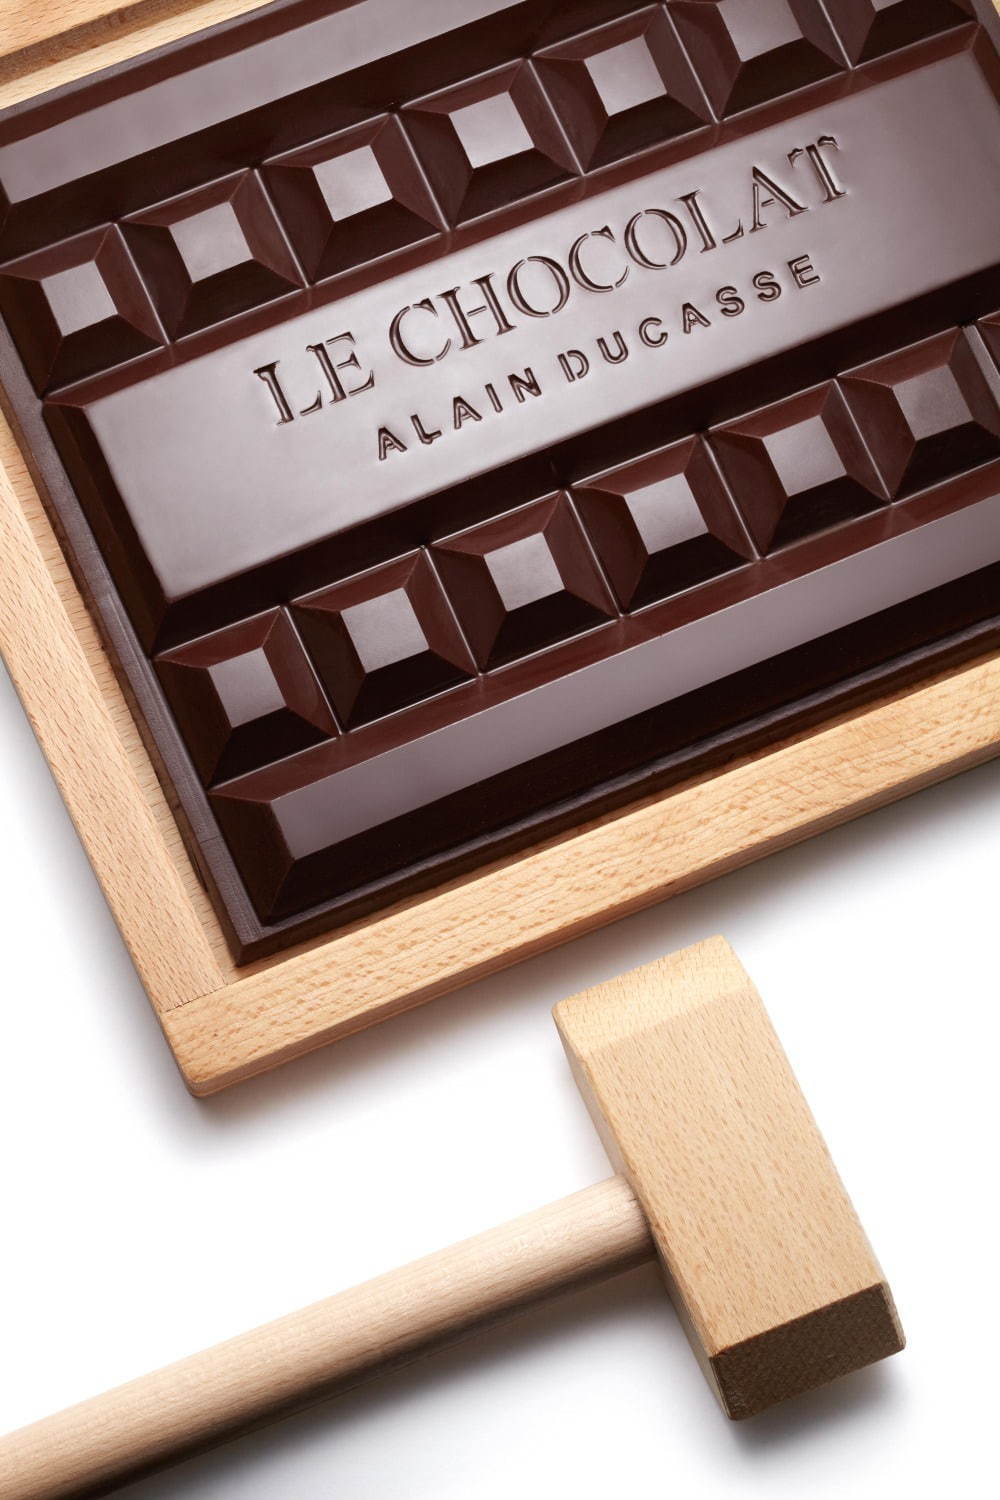 ル・ショコラ・アラン・デュカス	(Le Chocolat Alain Ducasse) ル・ショコラ・アラン・デュカス｜写真22